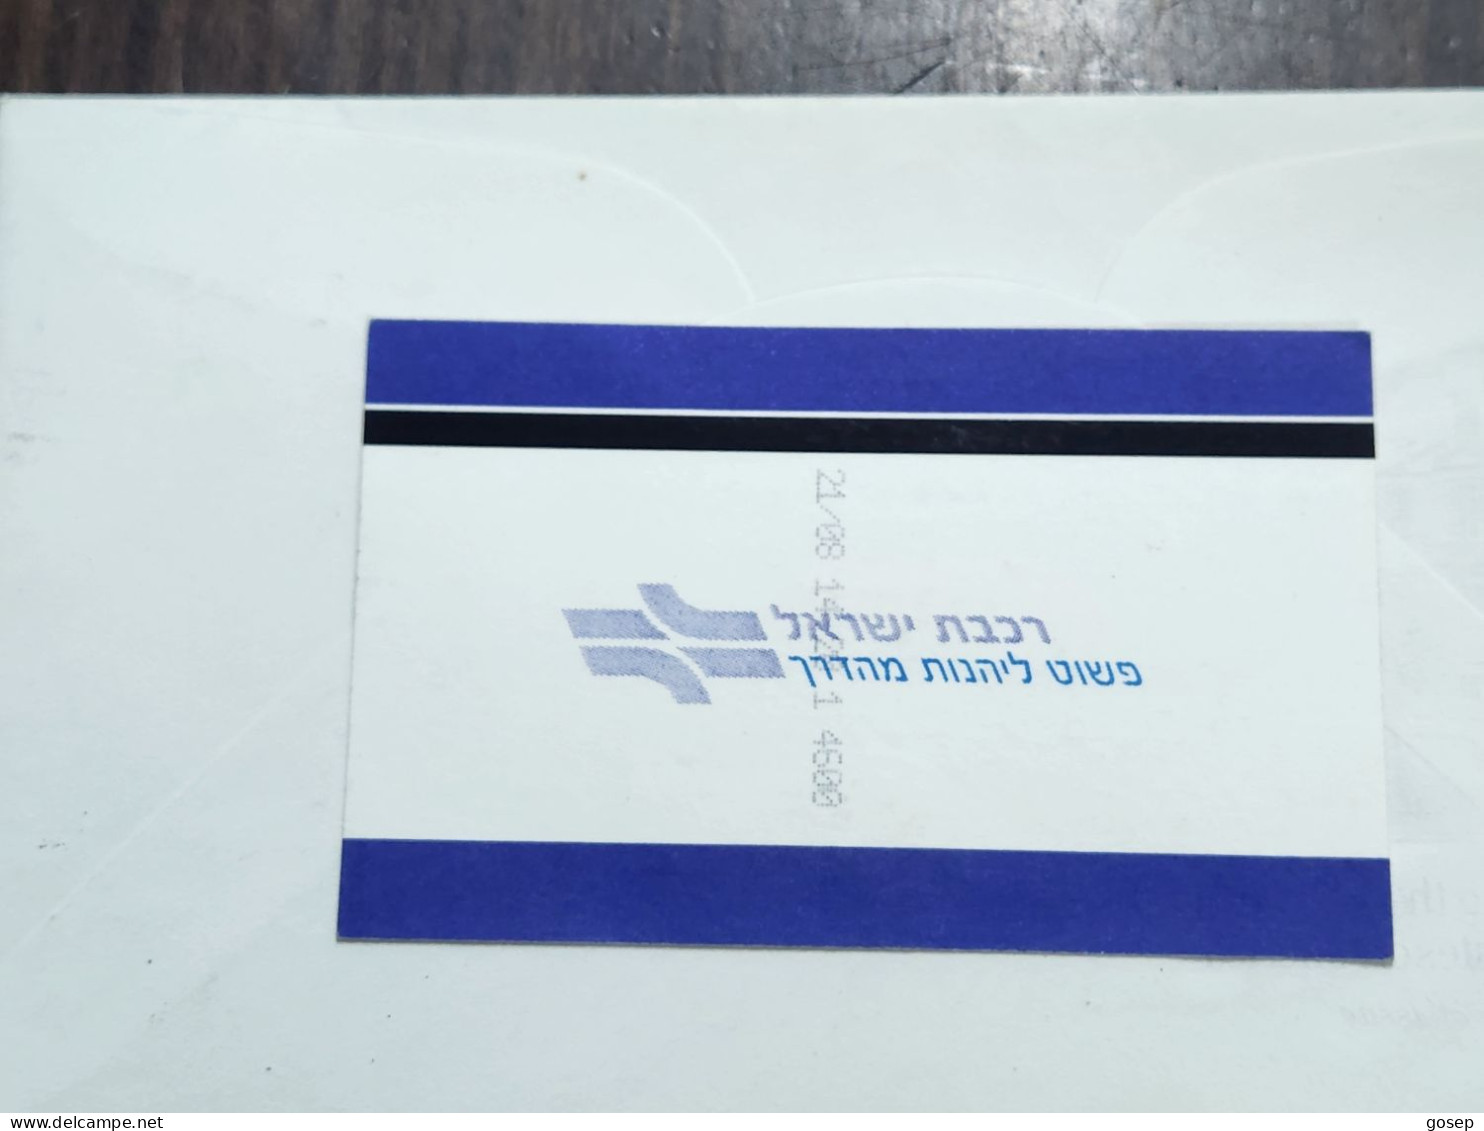 ISRAEL-Israel Railways Ltd-Tel-Aviv Center-Lod-Tel Aviv Center-(6713074)-adult-(25)-21.08.2018-(11.00₪)-good - Spoorweg